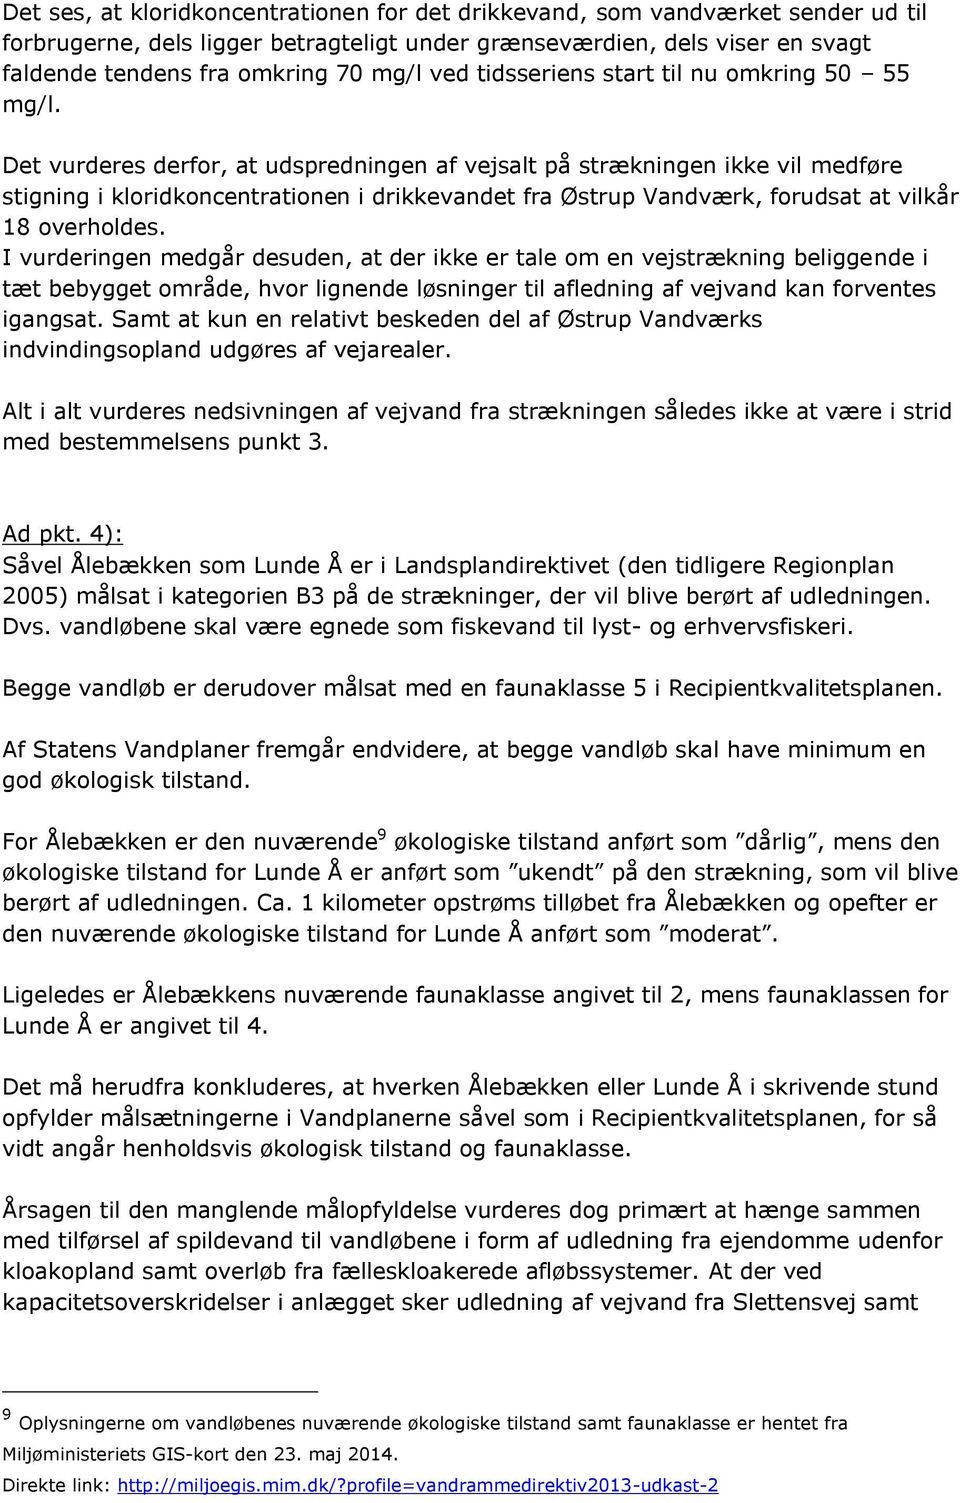 Det vurderes derfor, at udspredningen af vejsalt på strækningen ikke vil medføre stigning i kloridkoncentrationen i drikkevandet fra Østrup Vandværk, forudsat at vilkår 18 overholdes.